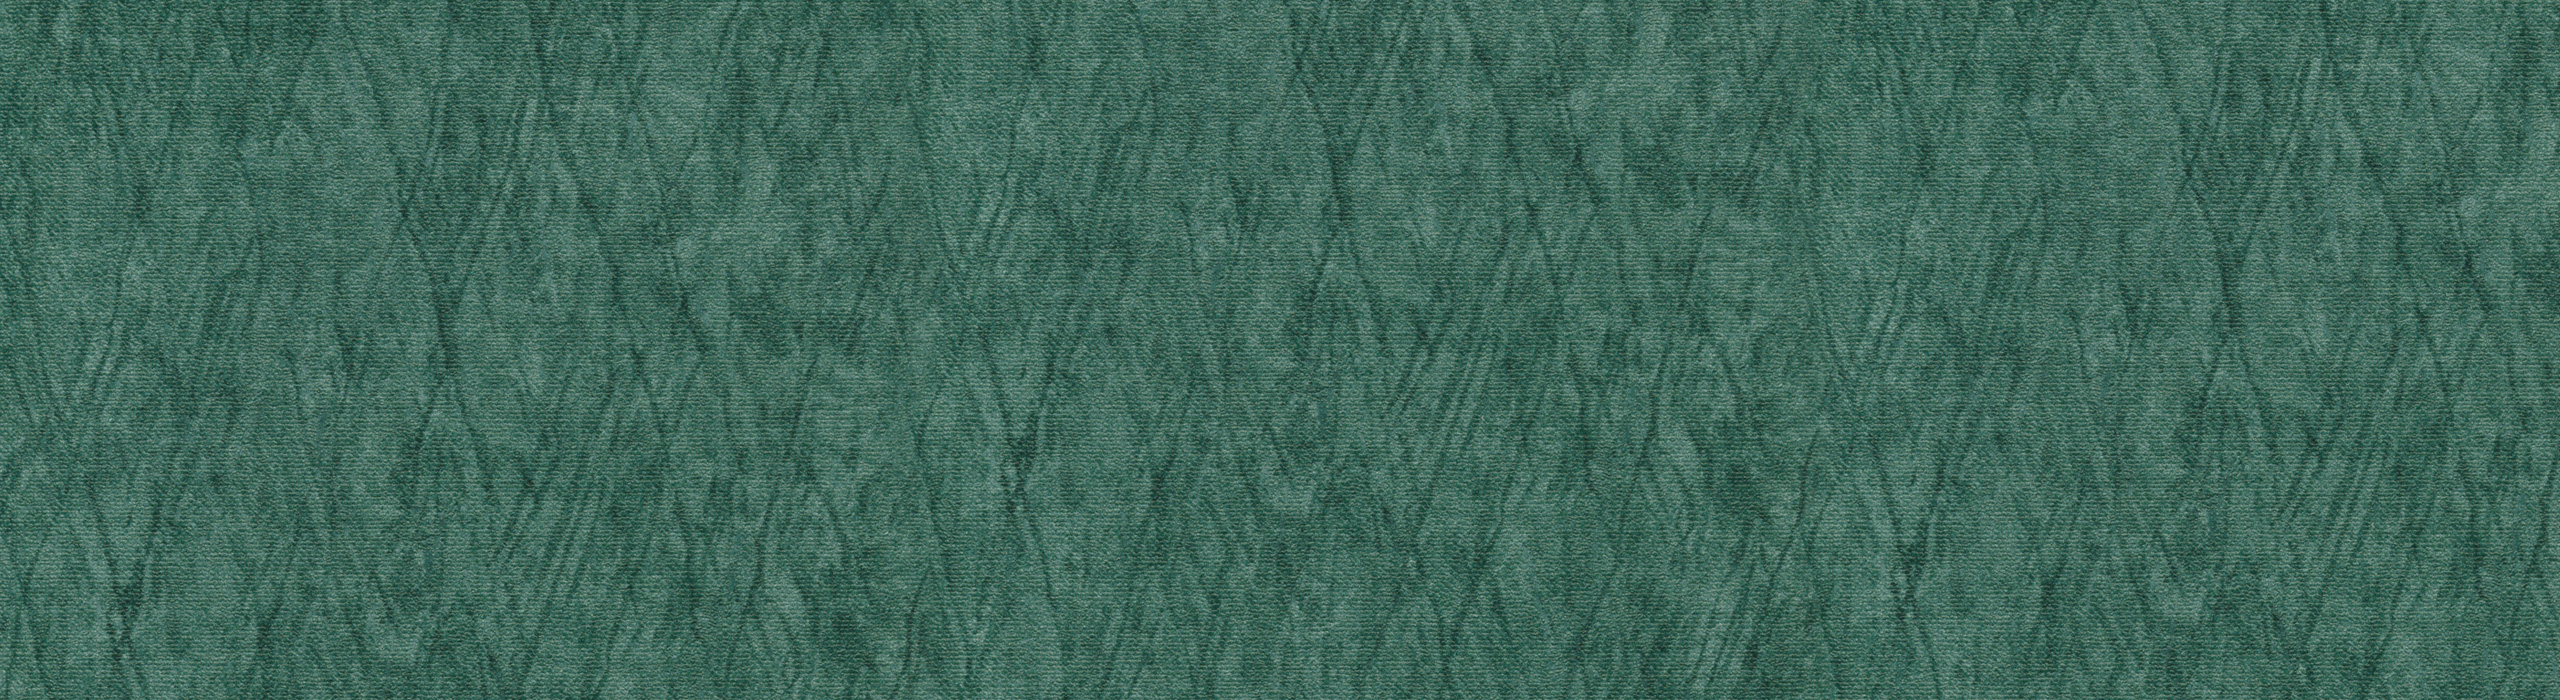 картинка 88284-4 Veluce 2018 Обои виниловые на бумажной основе 1.06*15.6 рисунок ткань цвет зелёный